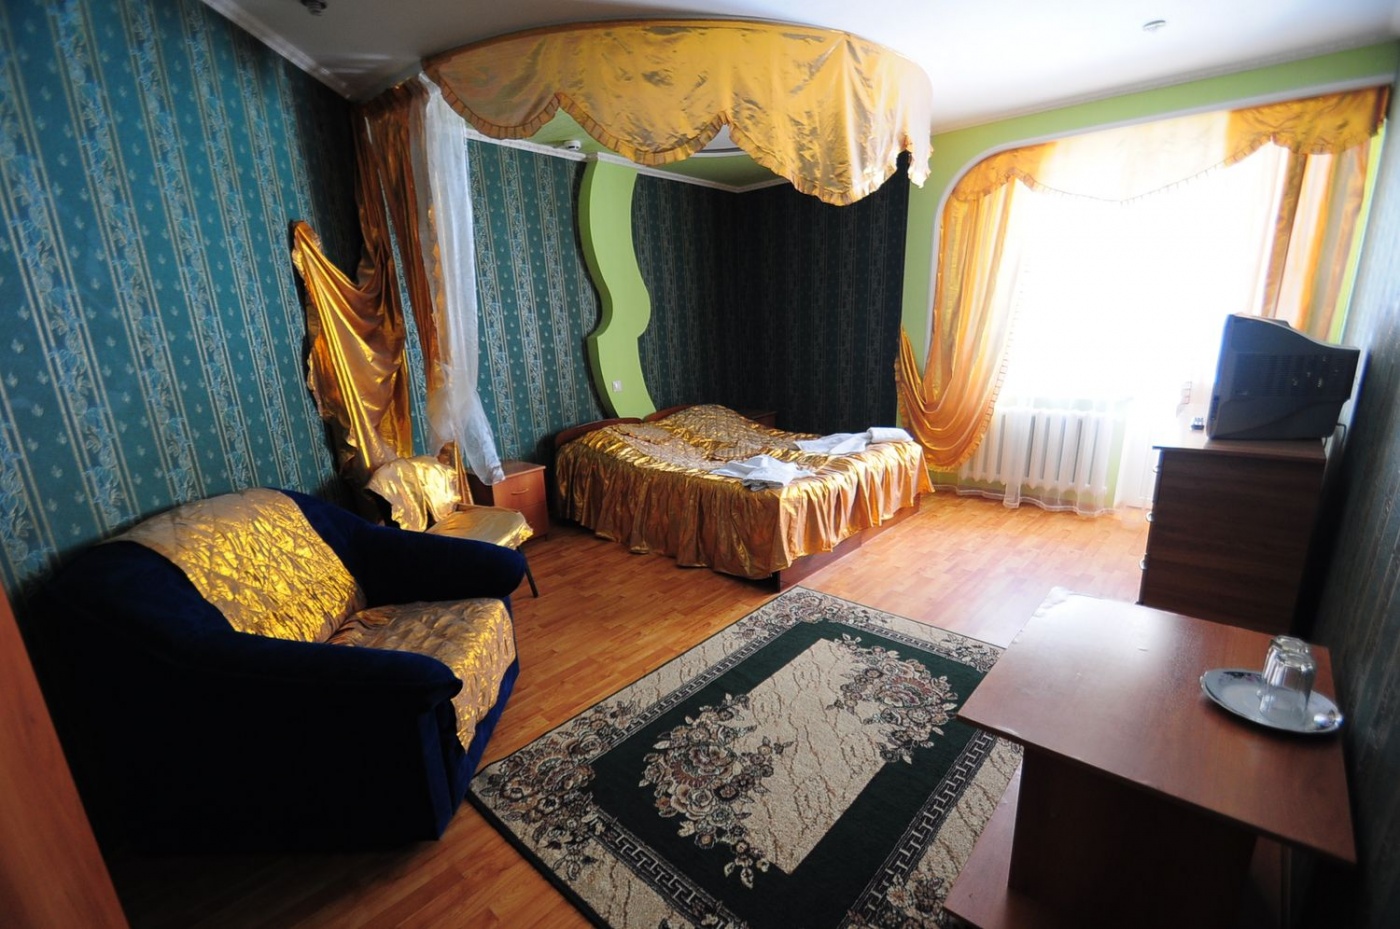  Отель «Шахерезада» Кабардино-Балкарская Республика Полулюкс, фото 1